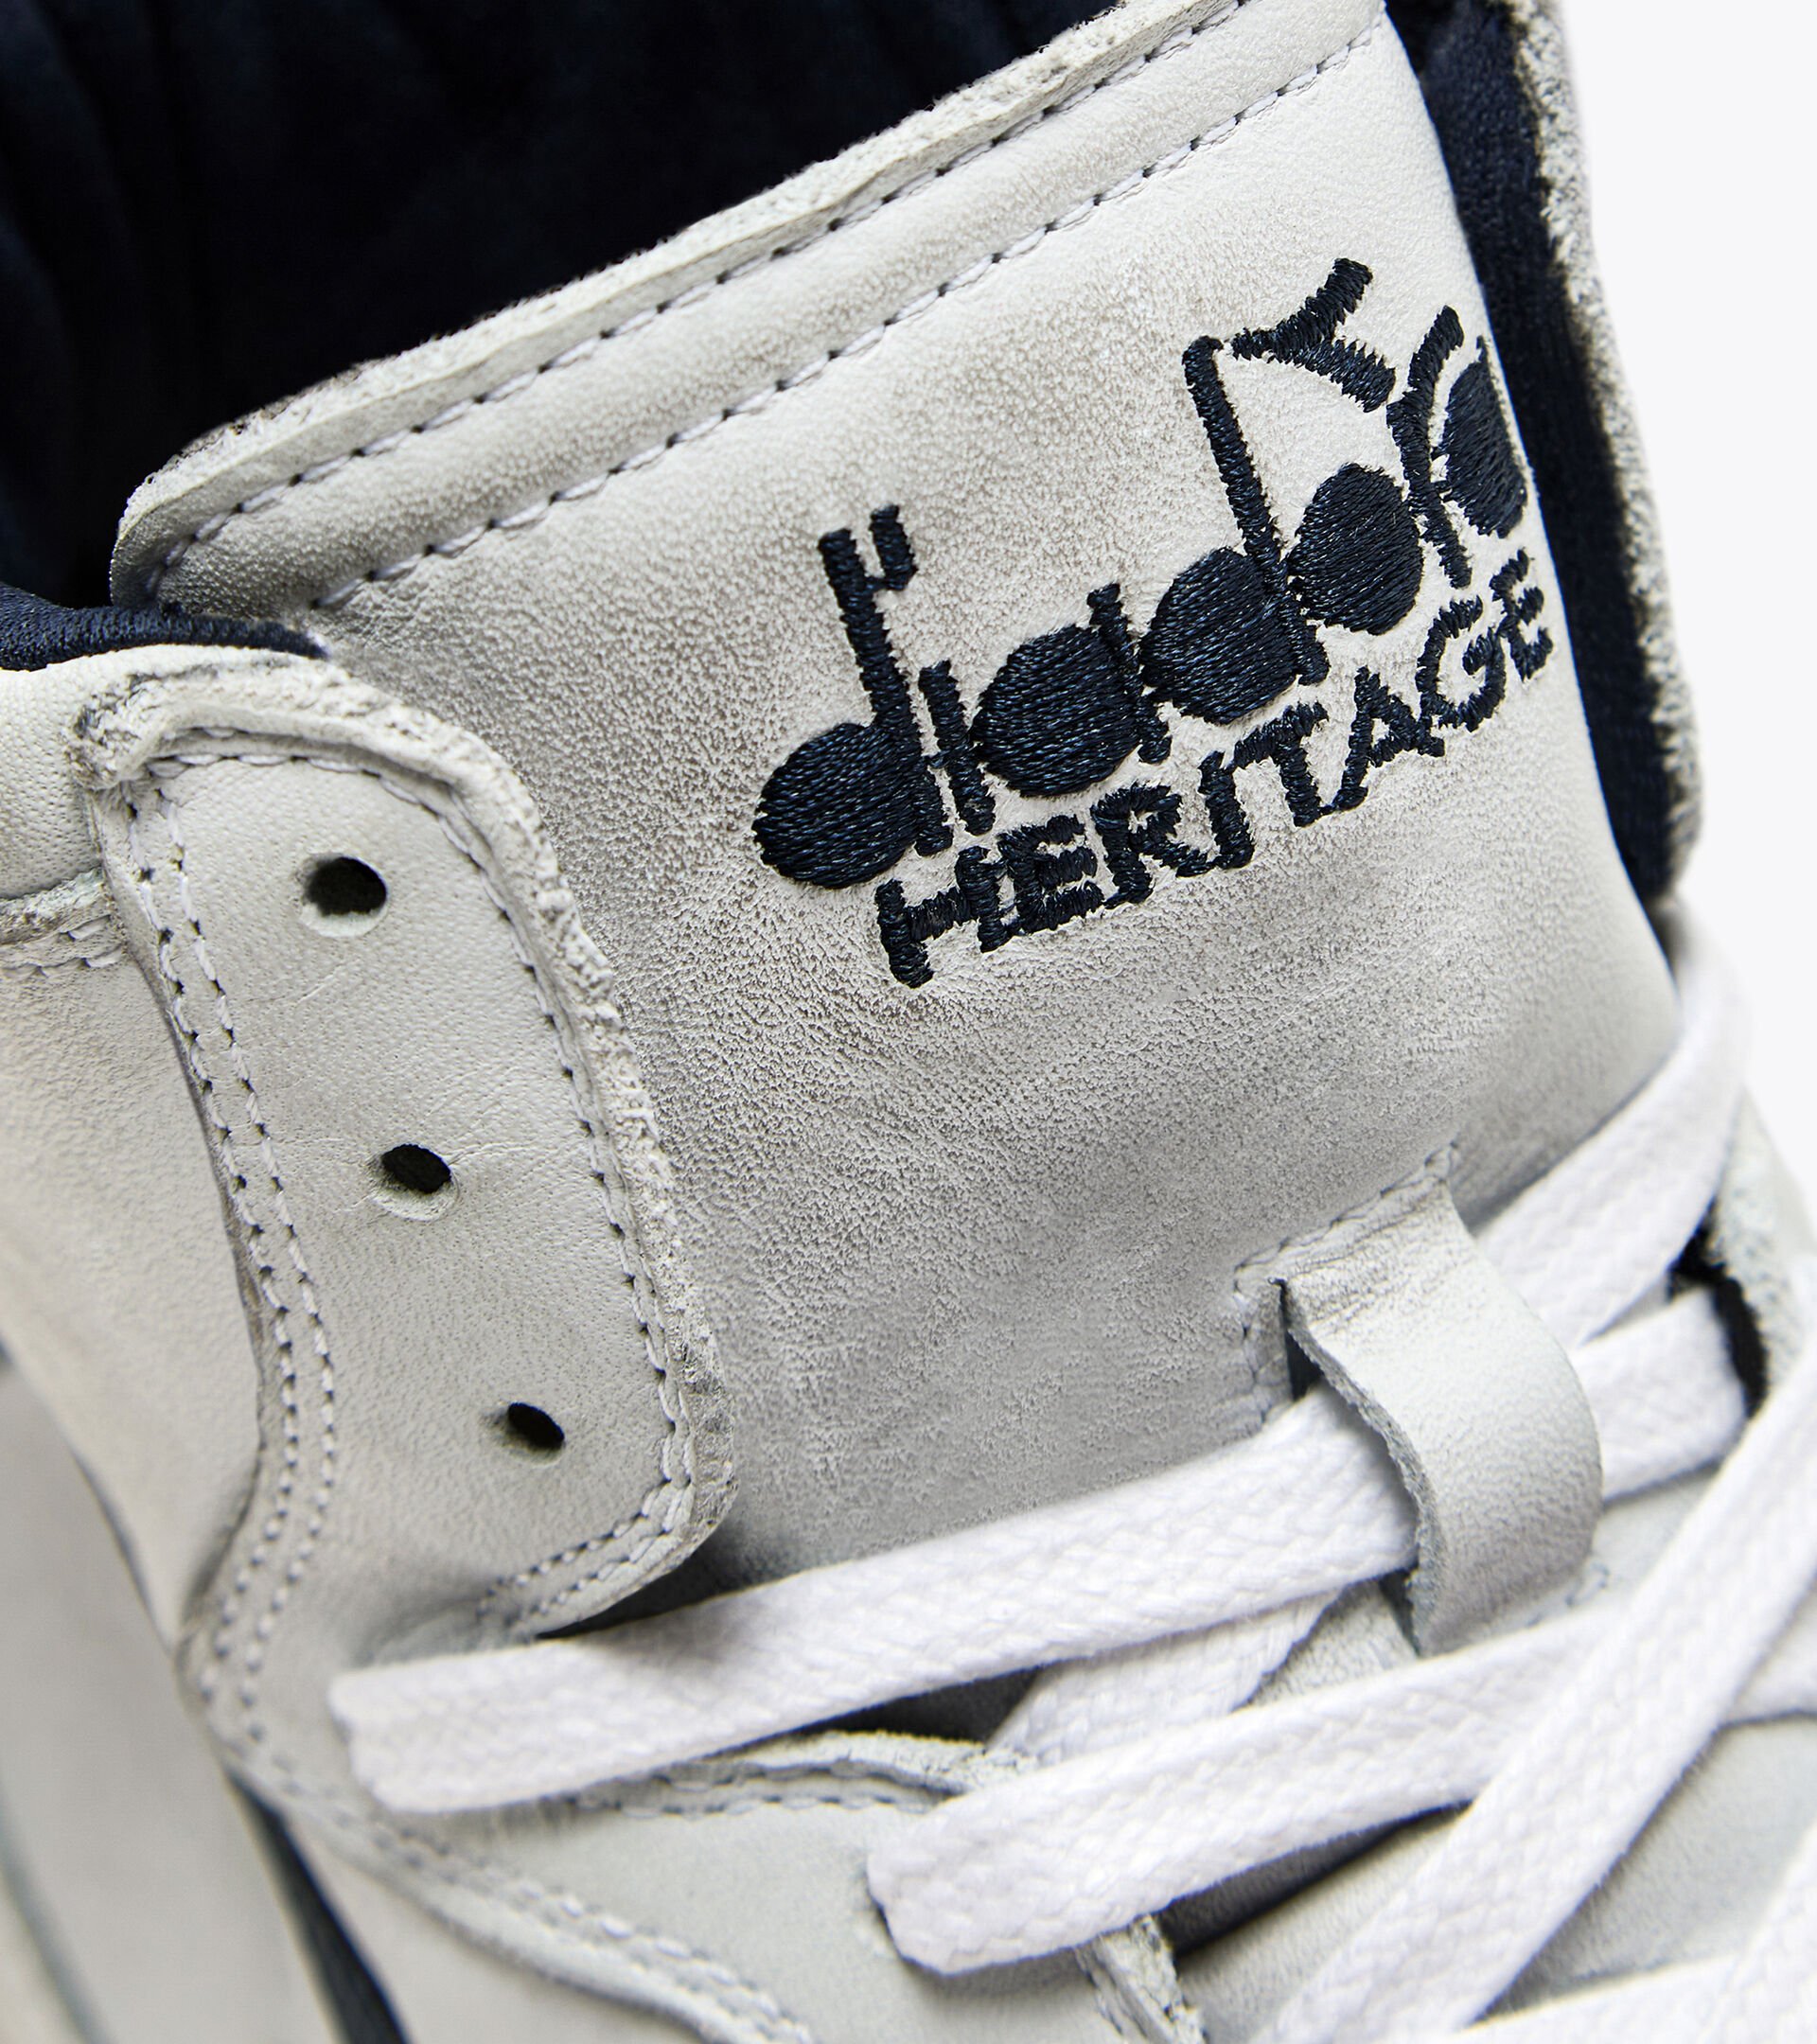 Heritage-Schuh - Gender neutral MI BASKET USED WEISS/BLAU KORSAR - Diadora